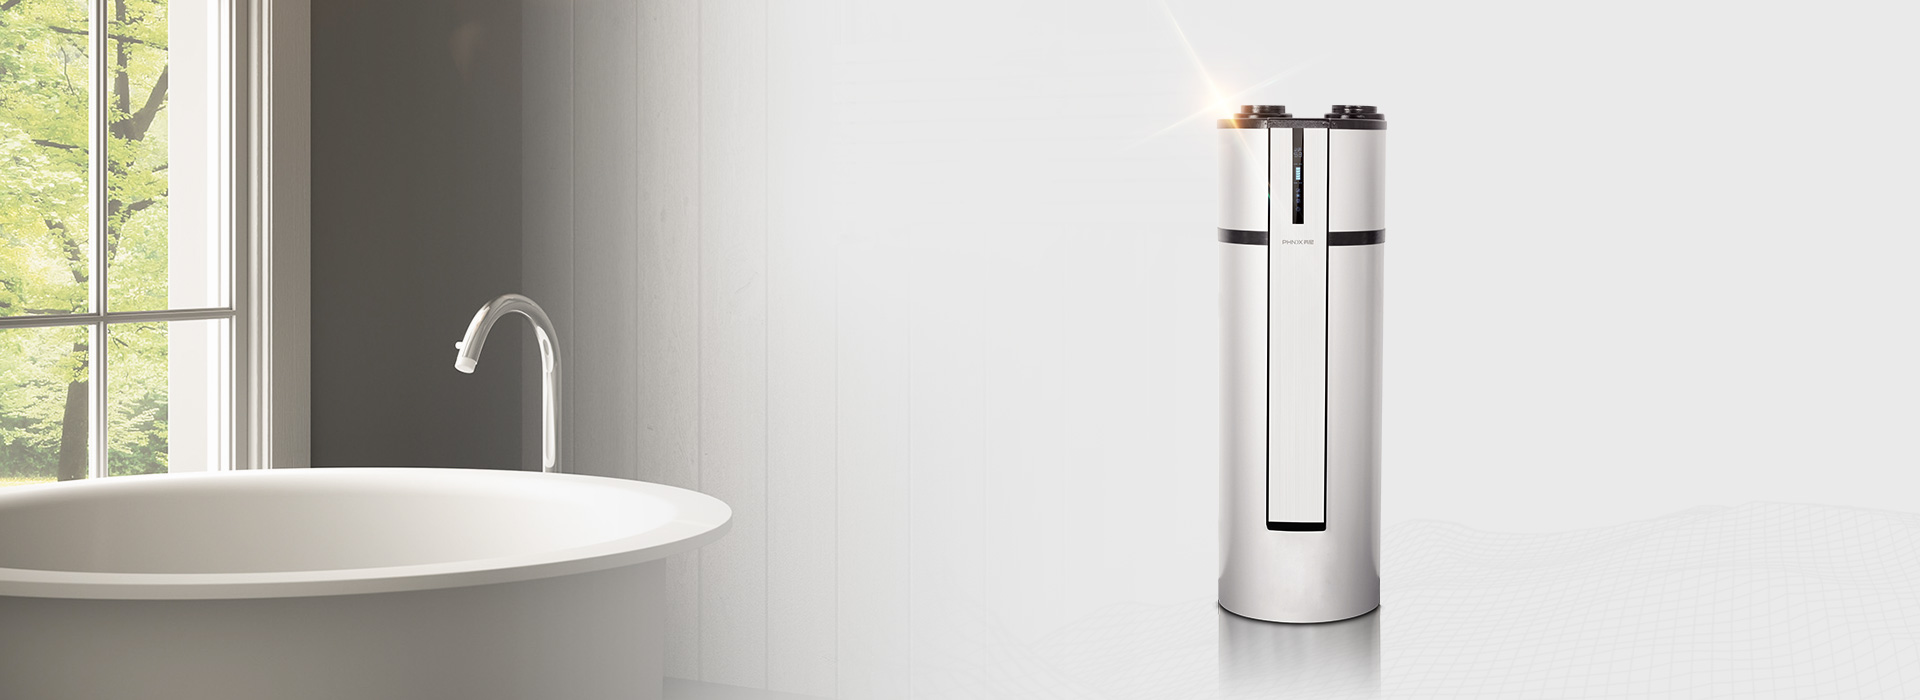 芬尼空气能热水器豪华型200L懂您懂家的智慧科技